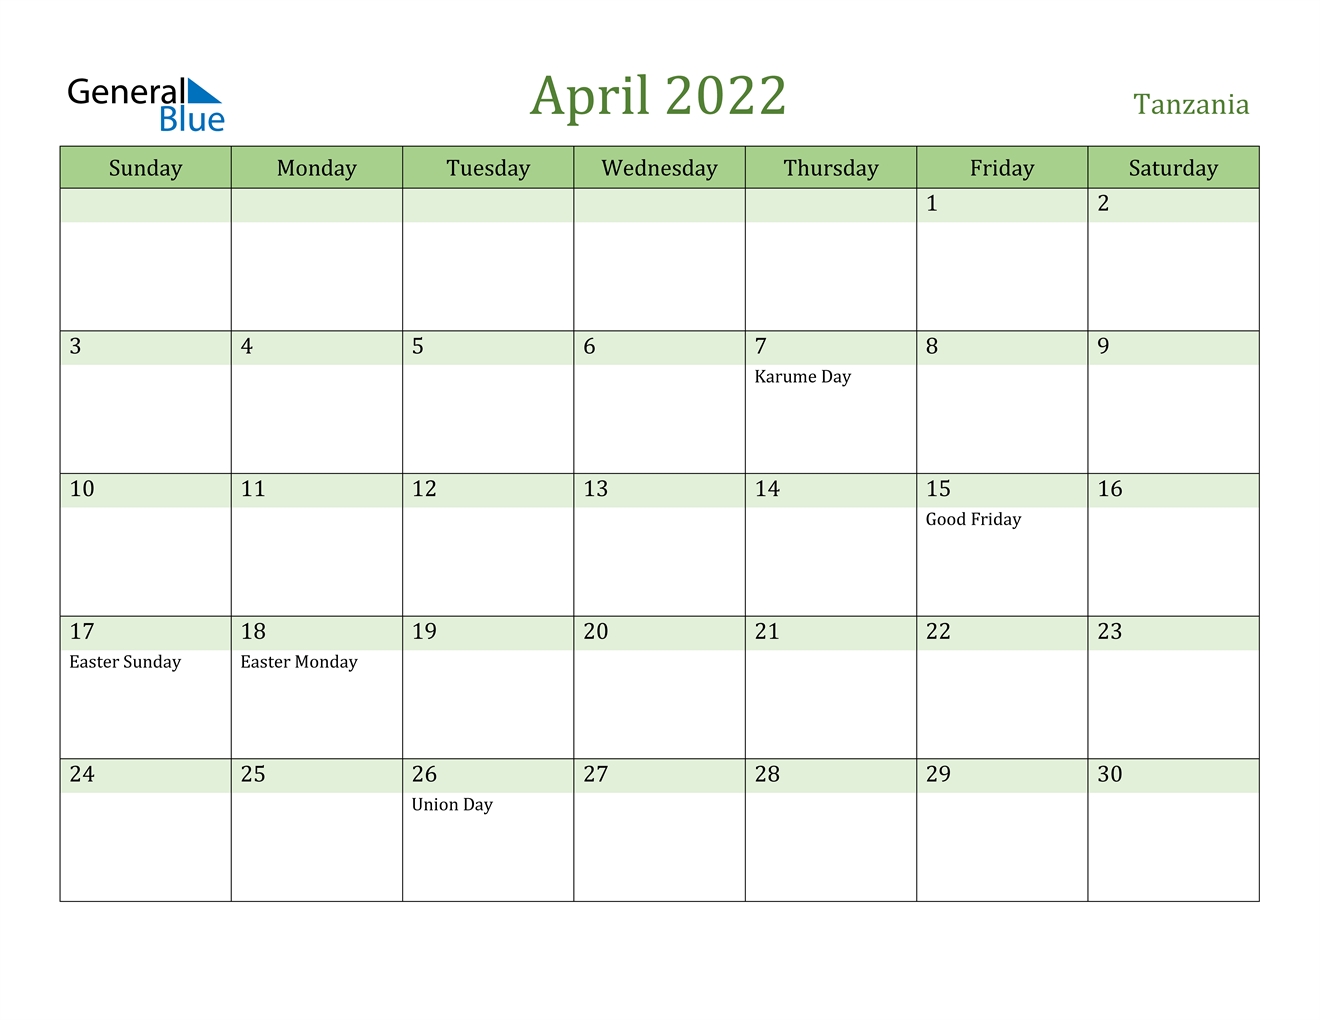 April 2022 Calendar - Tanzania